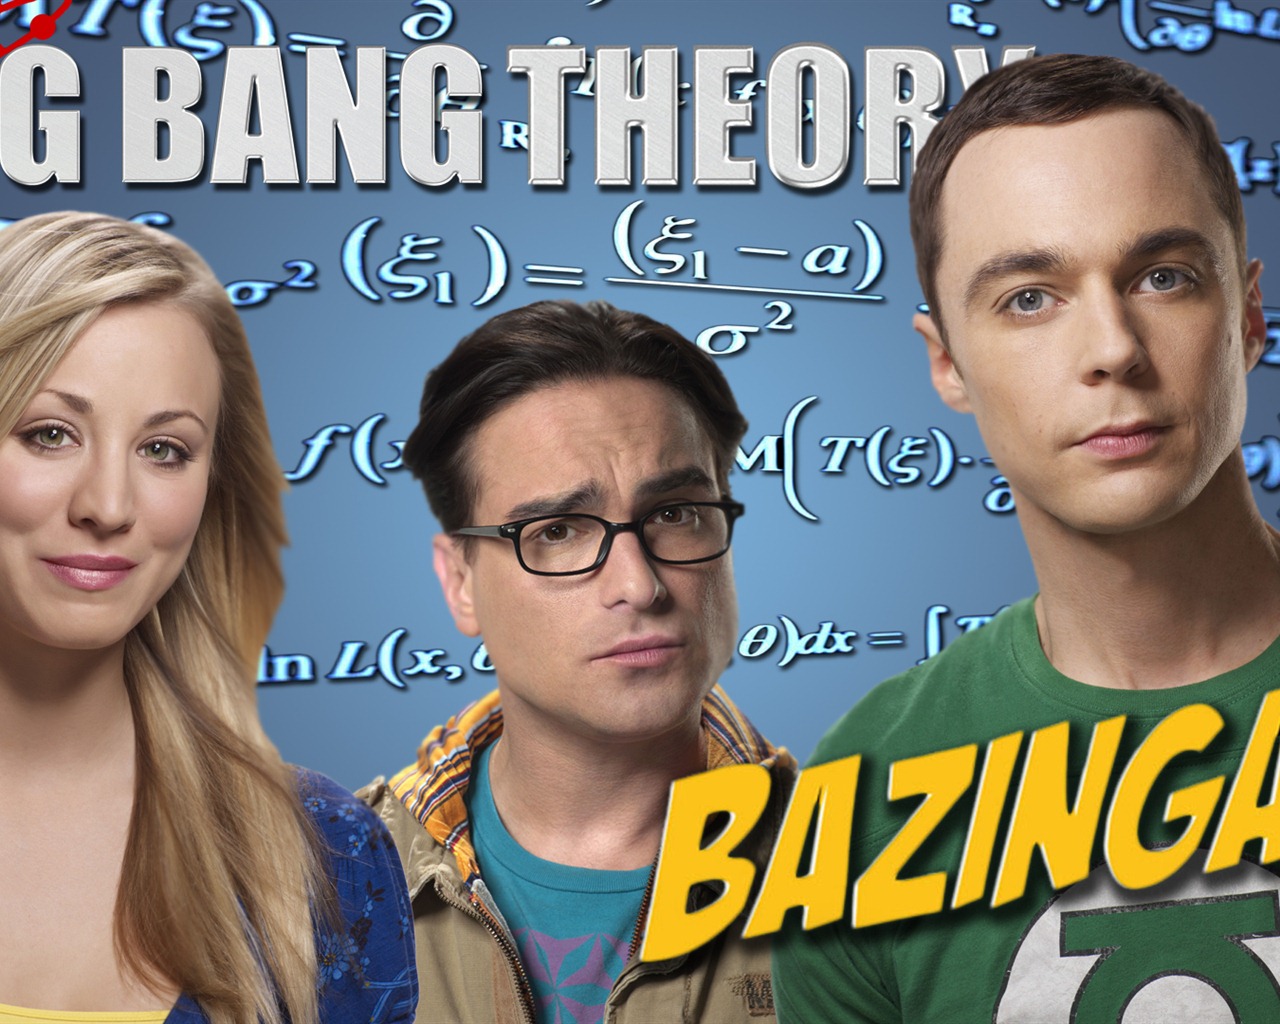 The Big Bang Theory 生活大爆炸 电视剧高清壁纸7 - 1280x1024